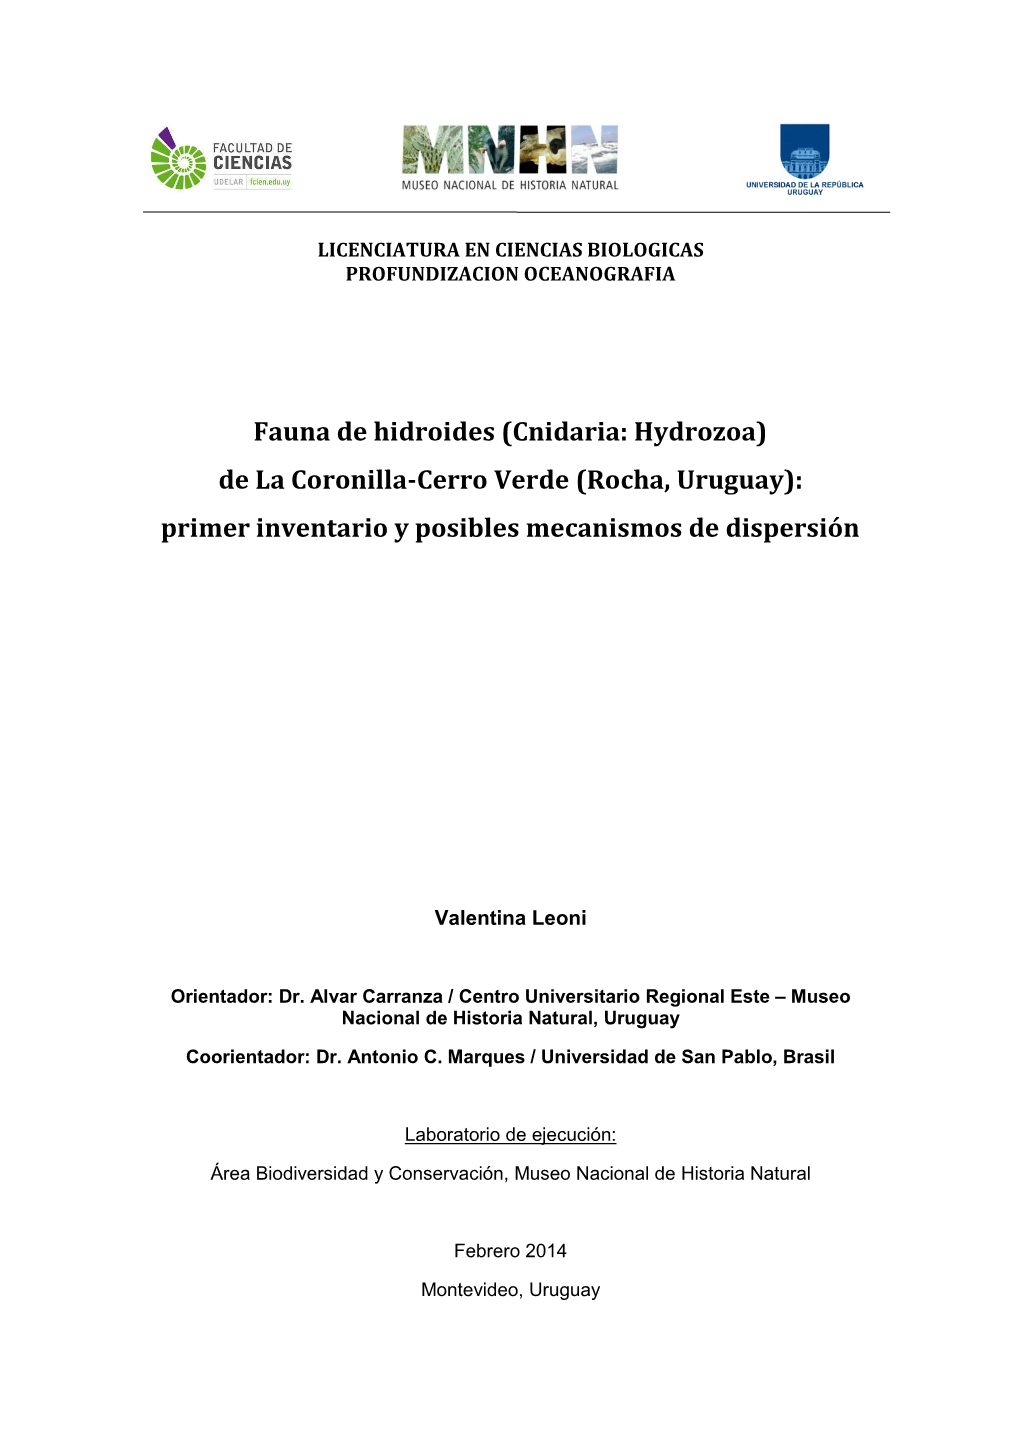 Fauna De Hidroides (Cnidaria: Hydrozoa) De La Coronilla-Cerro Verde (Rocha, Uruguay): Primer Inventario Y Posibles Mecanismos De Dispersión